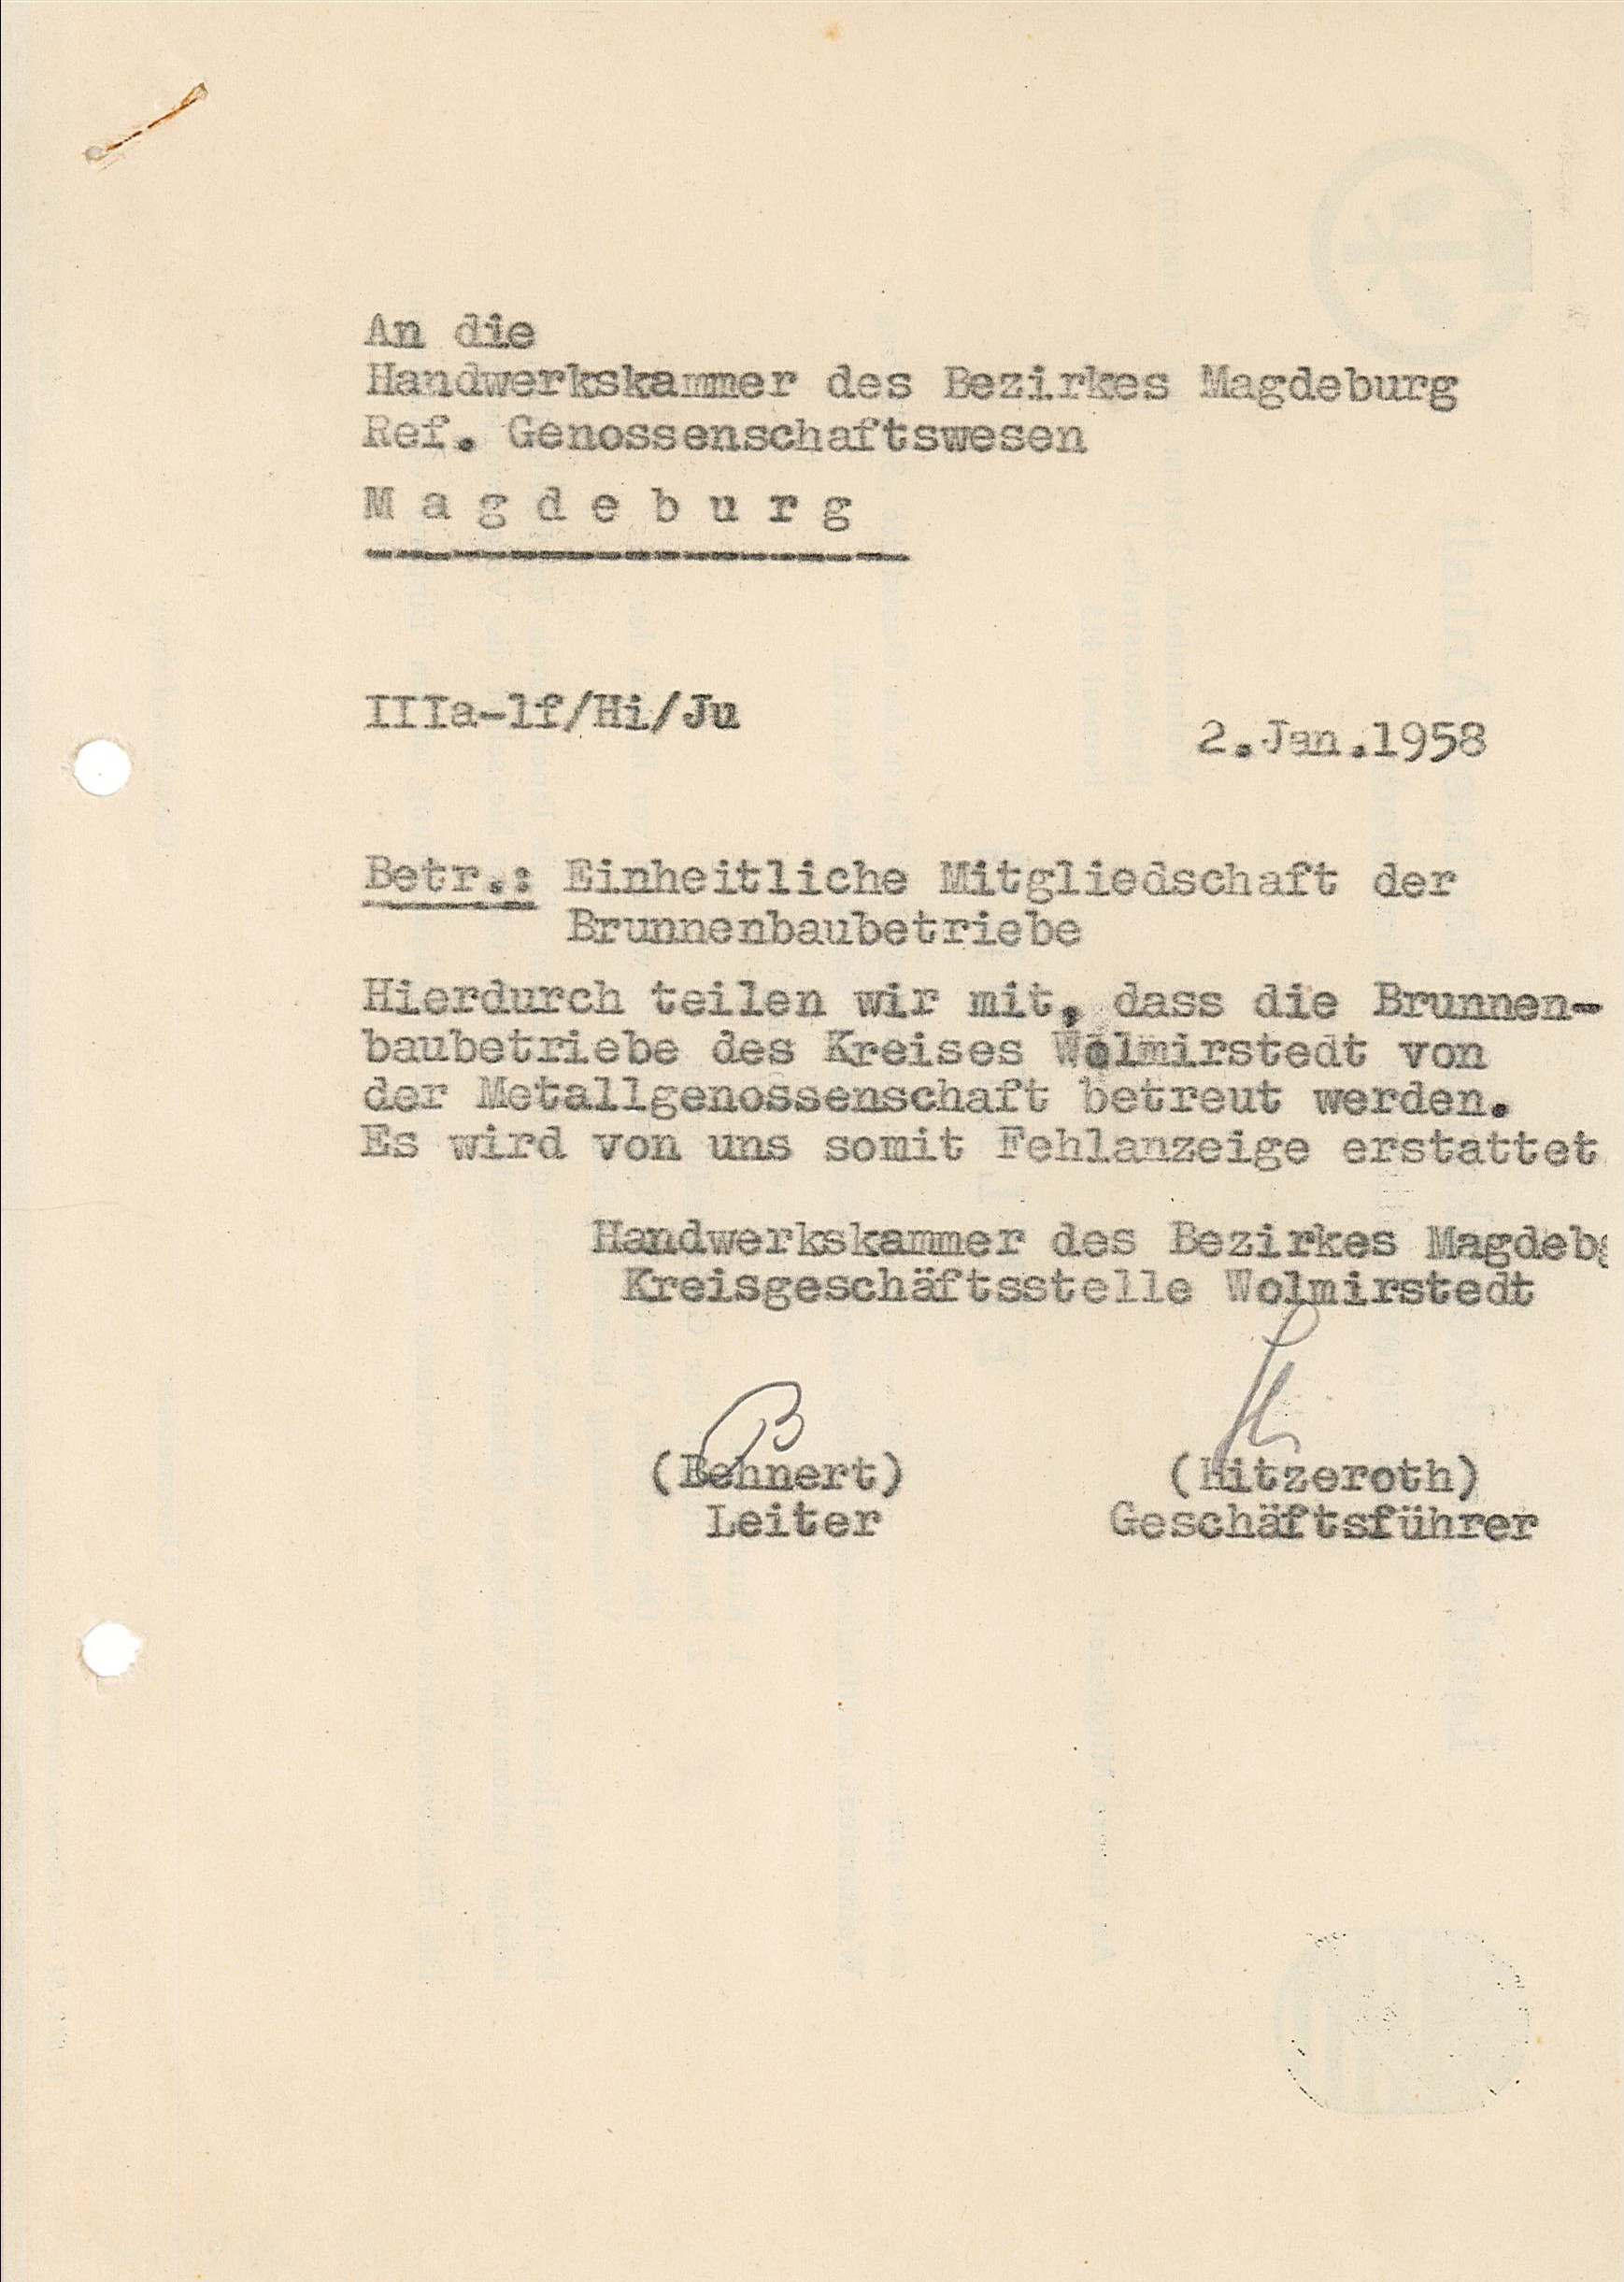 Schreiben zur einheitlichen Mitgliedschaft der Brunnenbaubetriebe, 1958 (Museum Wolmirstedt RR-F)